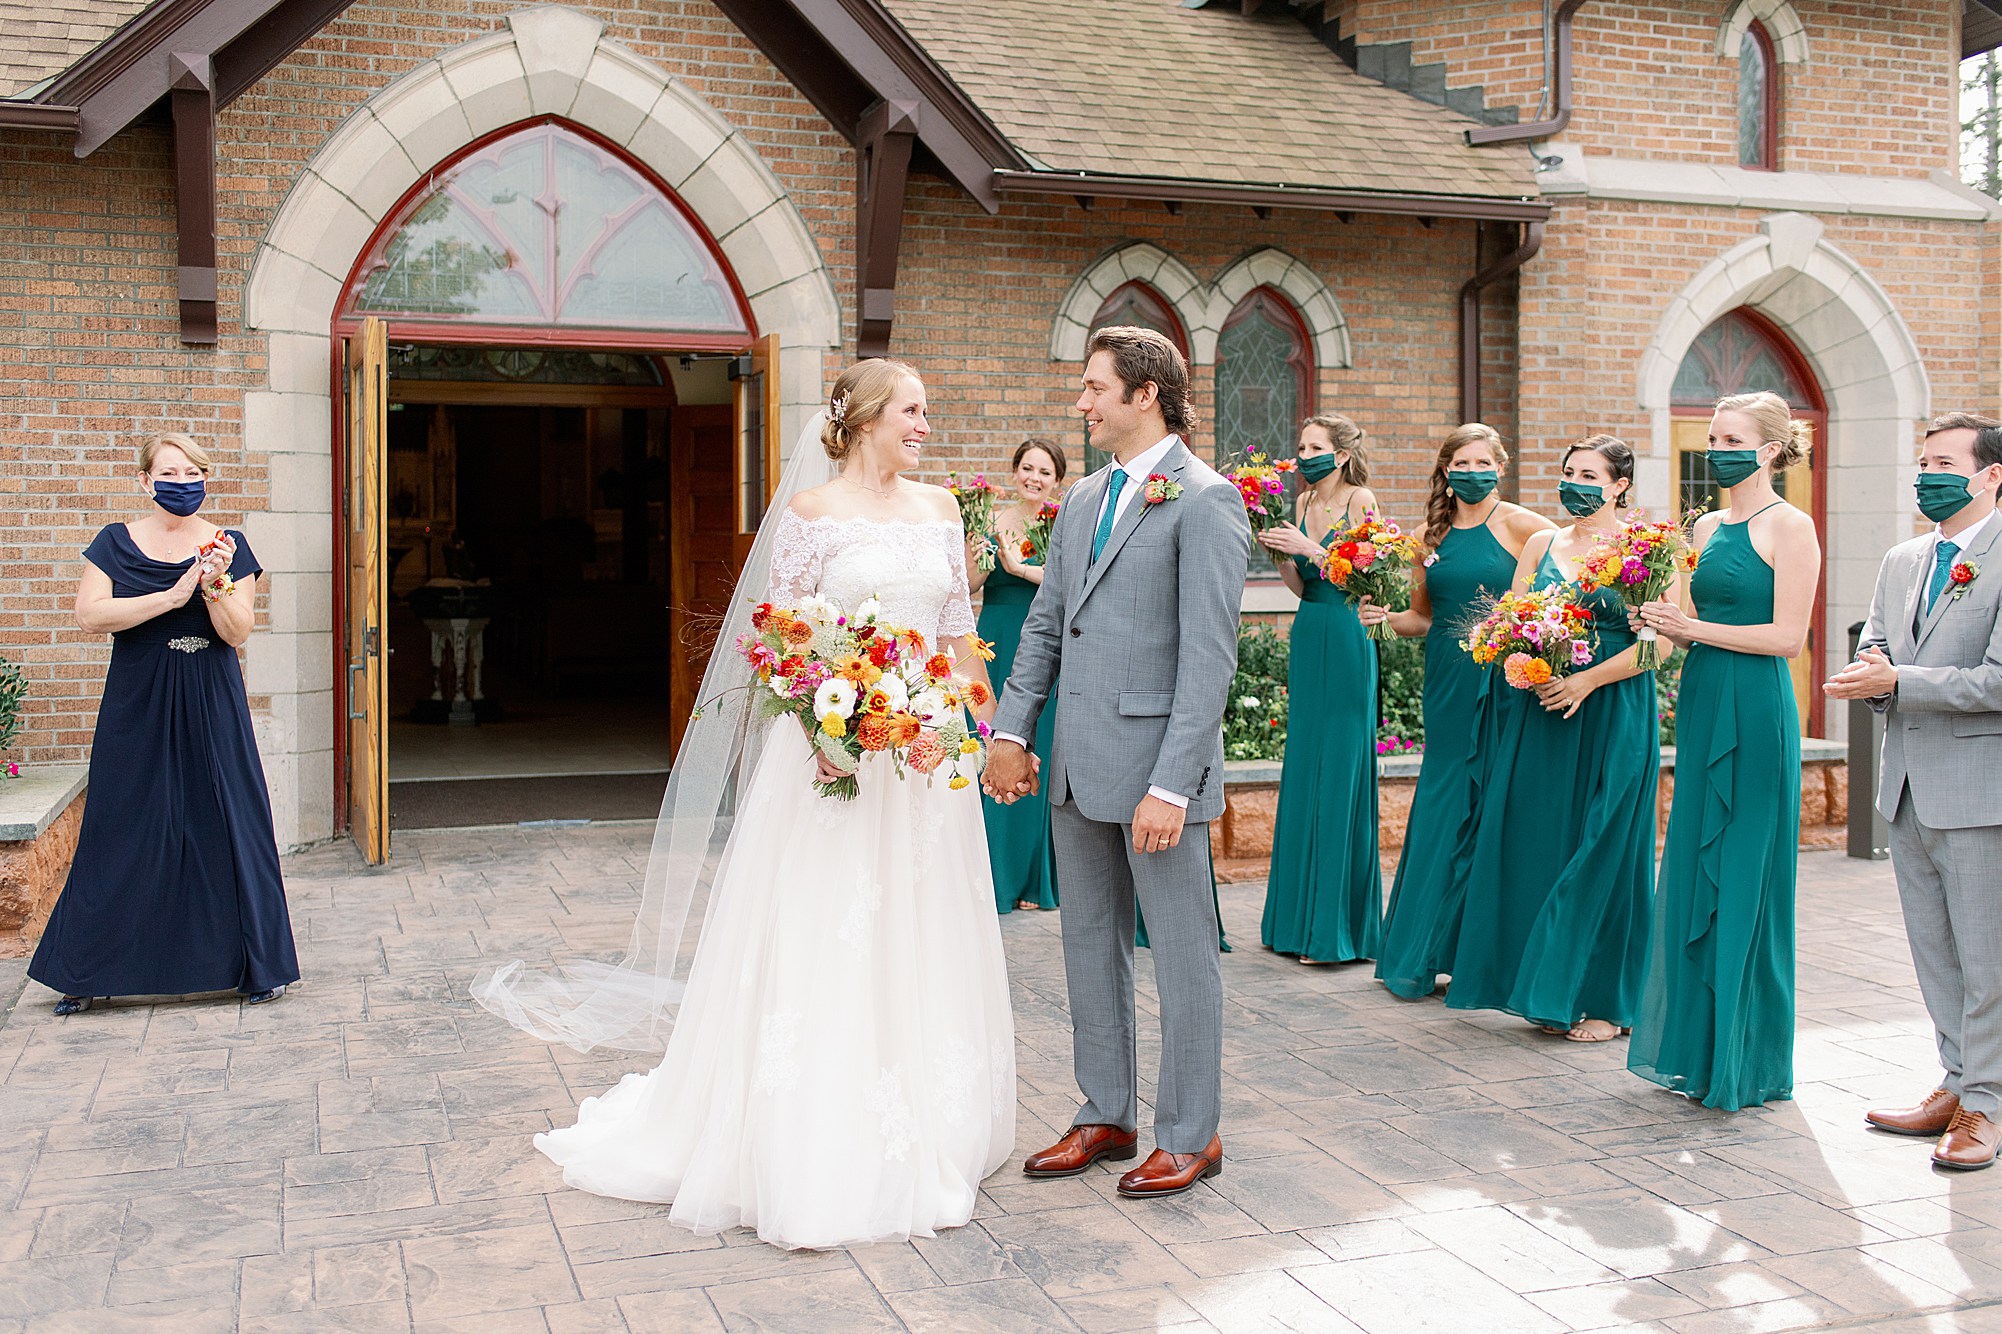 masked guests cheer as newlyweds exit church at Adirondack micro wedding